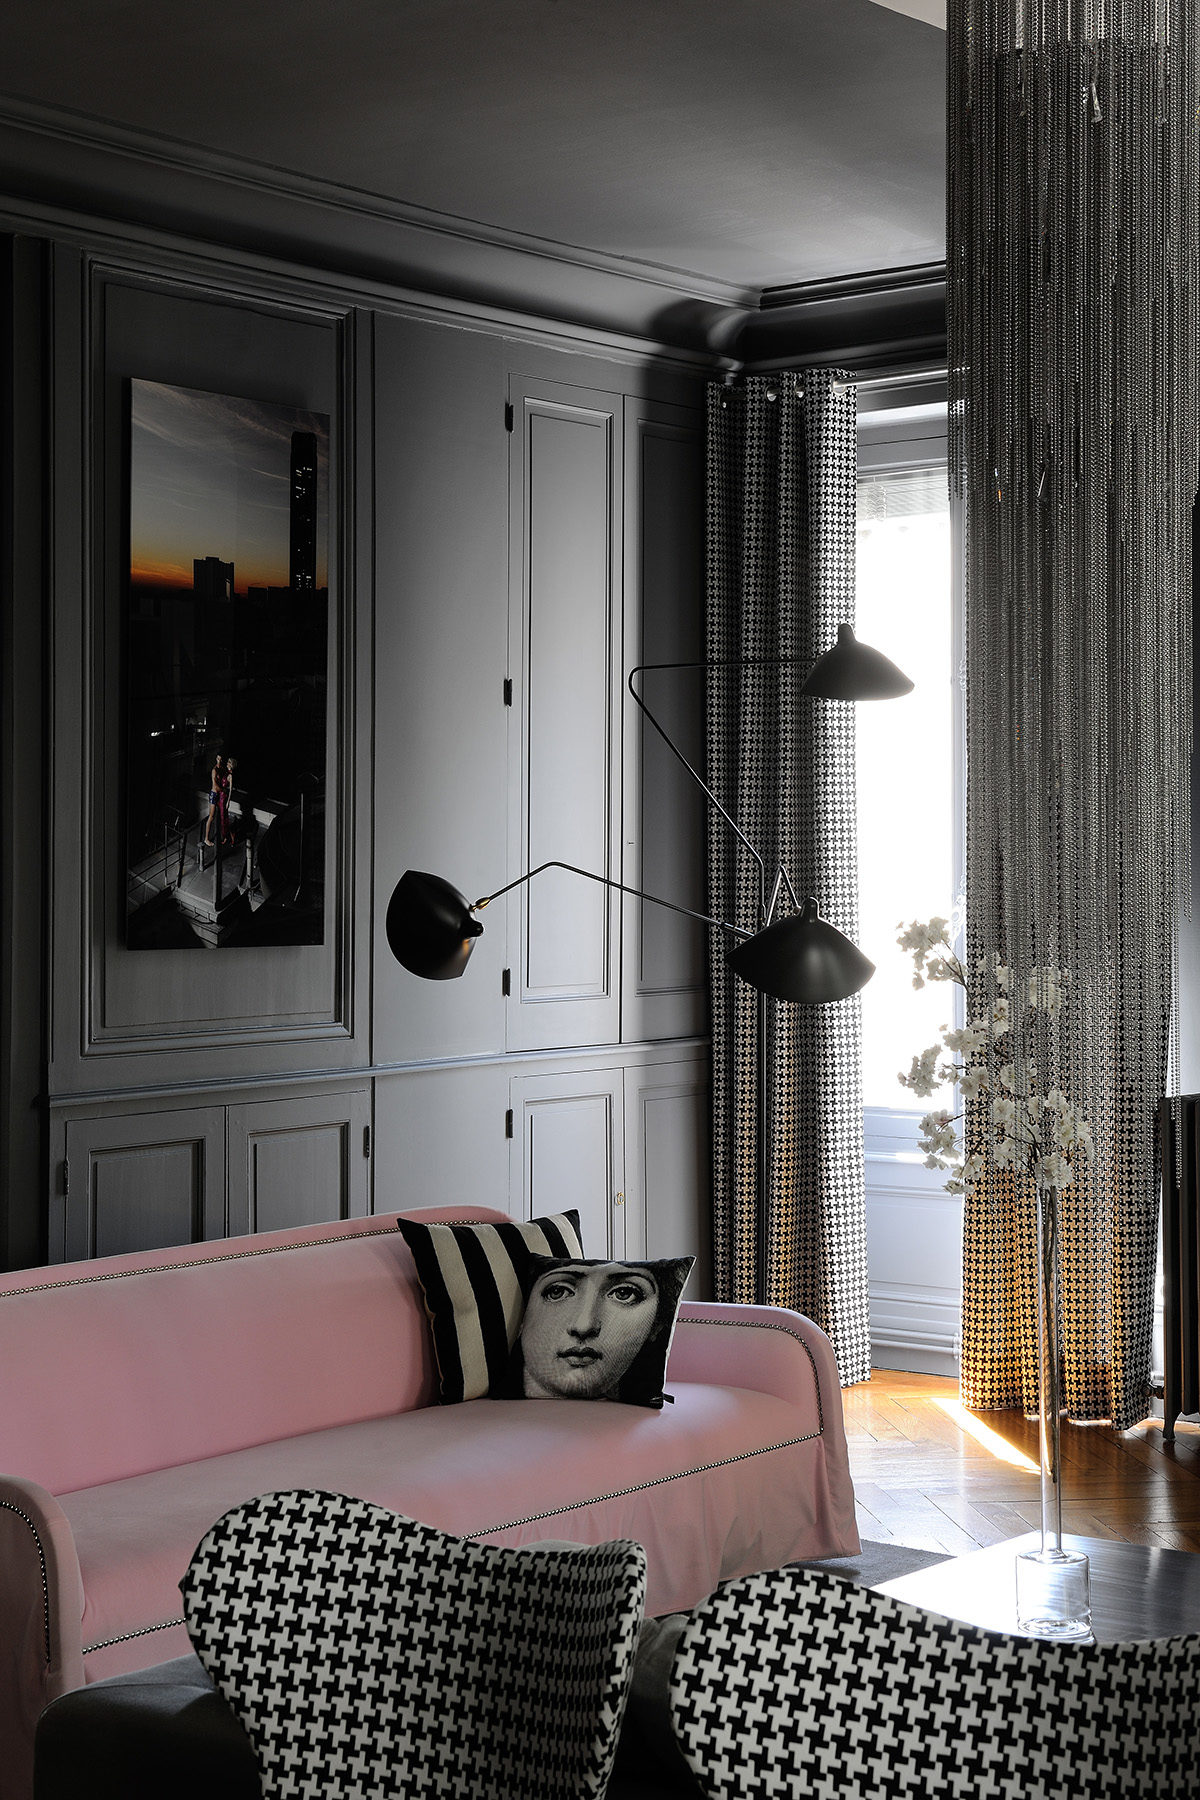 Réalisation résidentiel Claude Cartier décoration architecte d'intérieur à Lyon.